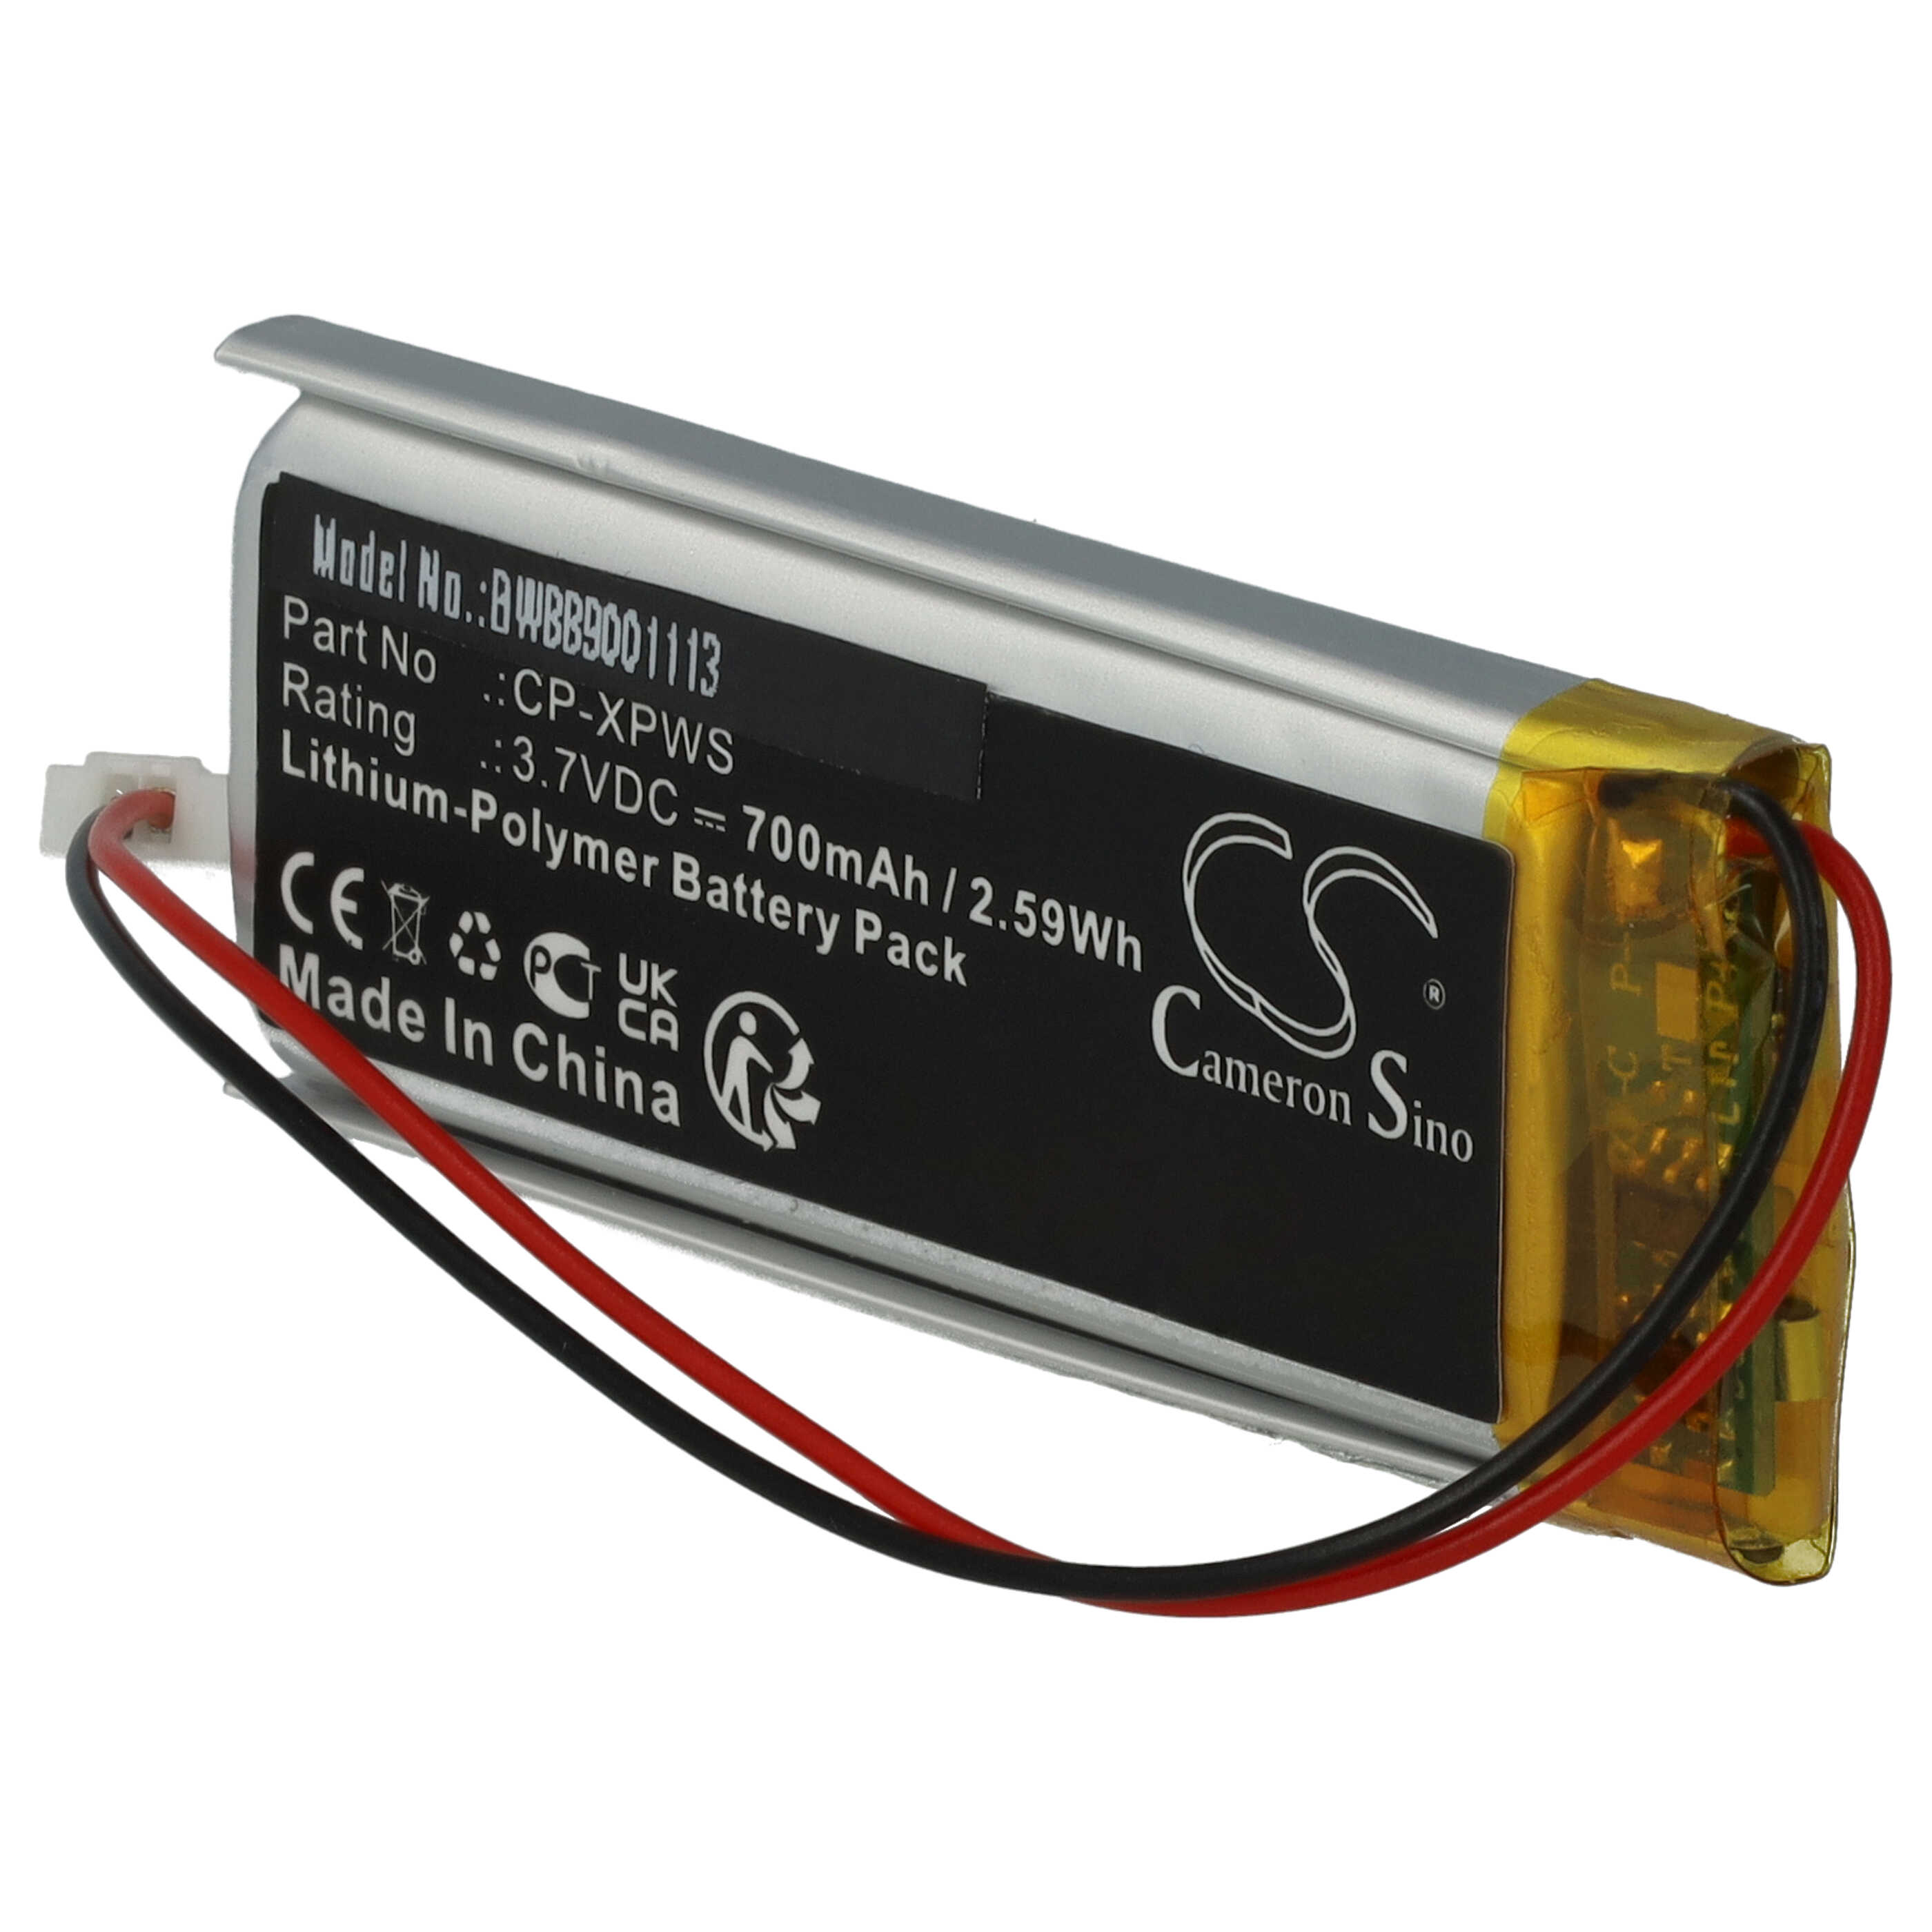 Batterie remplace XP Deus CP-XPWS pour détecteur de métaux - 700mAh 3,7V Li-polymère